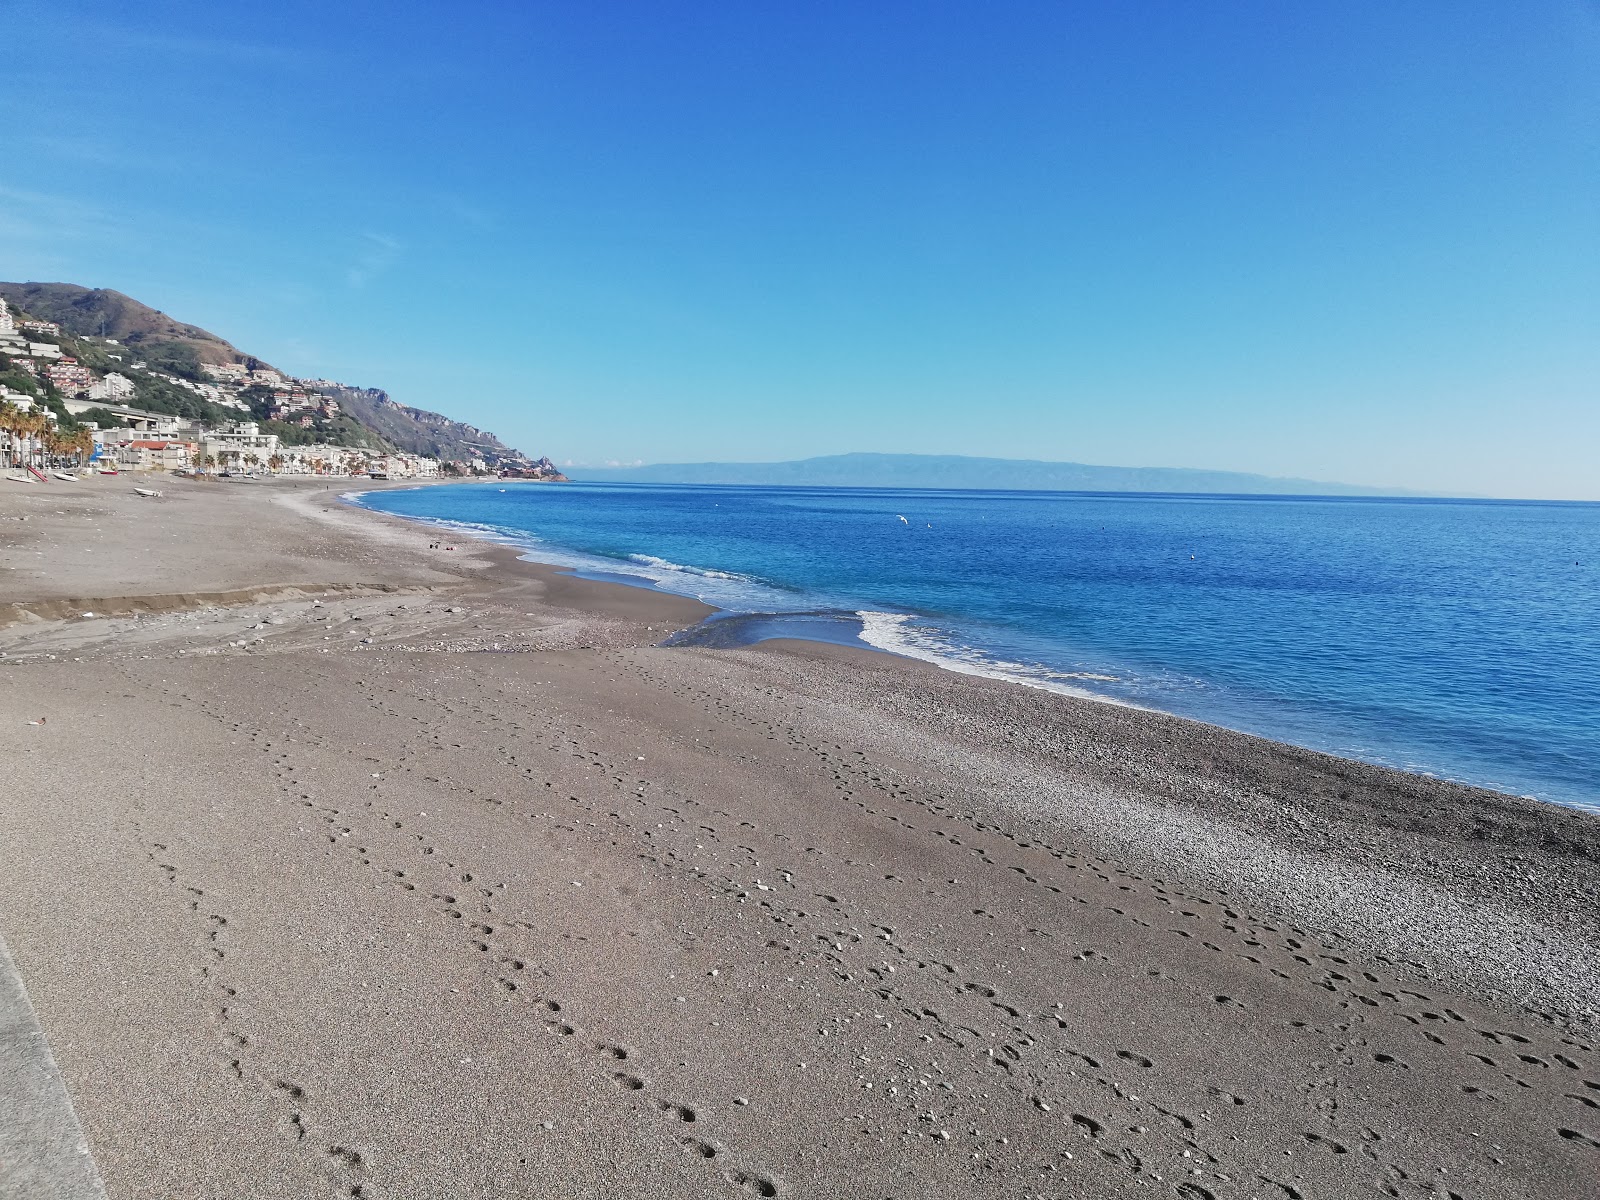 Foto af Spiaggia di Mazzeo og bosættelsen